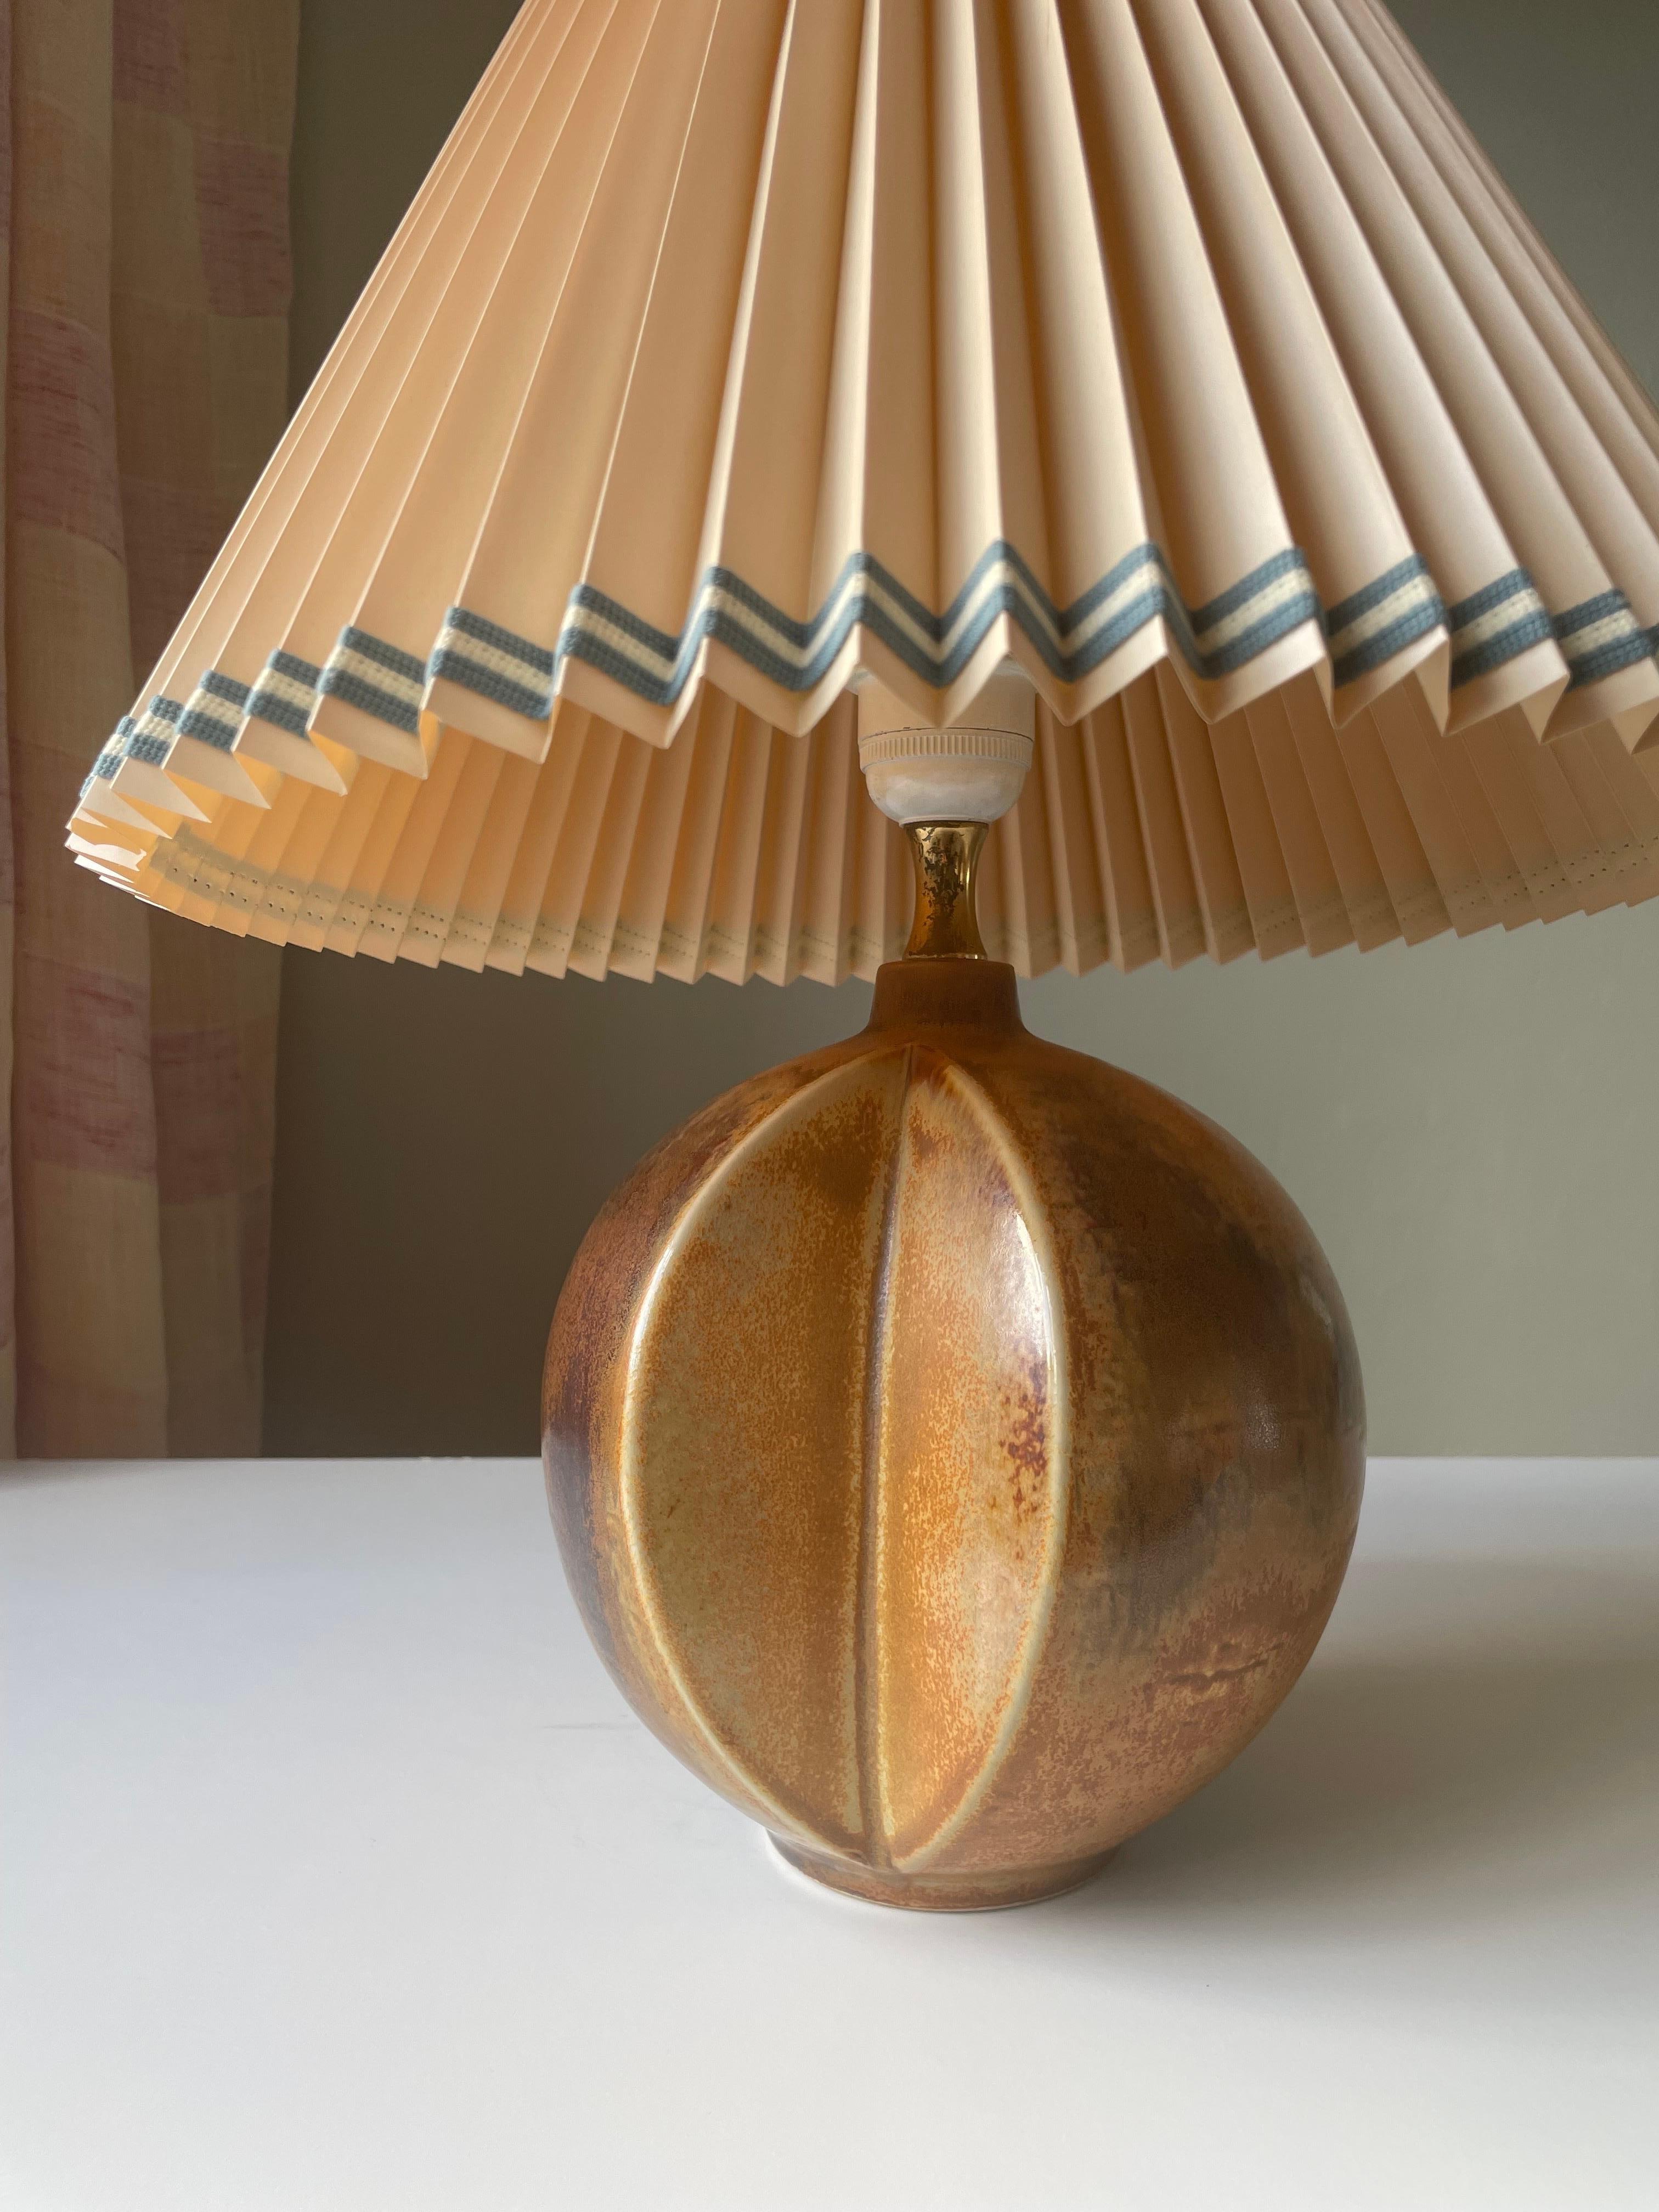 Lampe de table en céramique en forme de globe, de couleur marron doré, ambre et noir, avec deux 